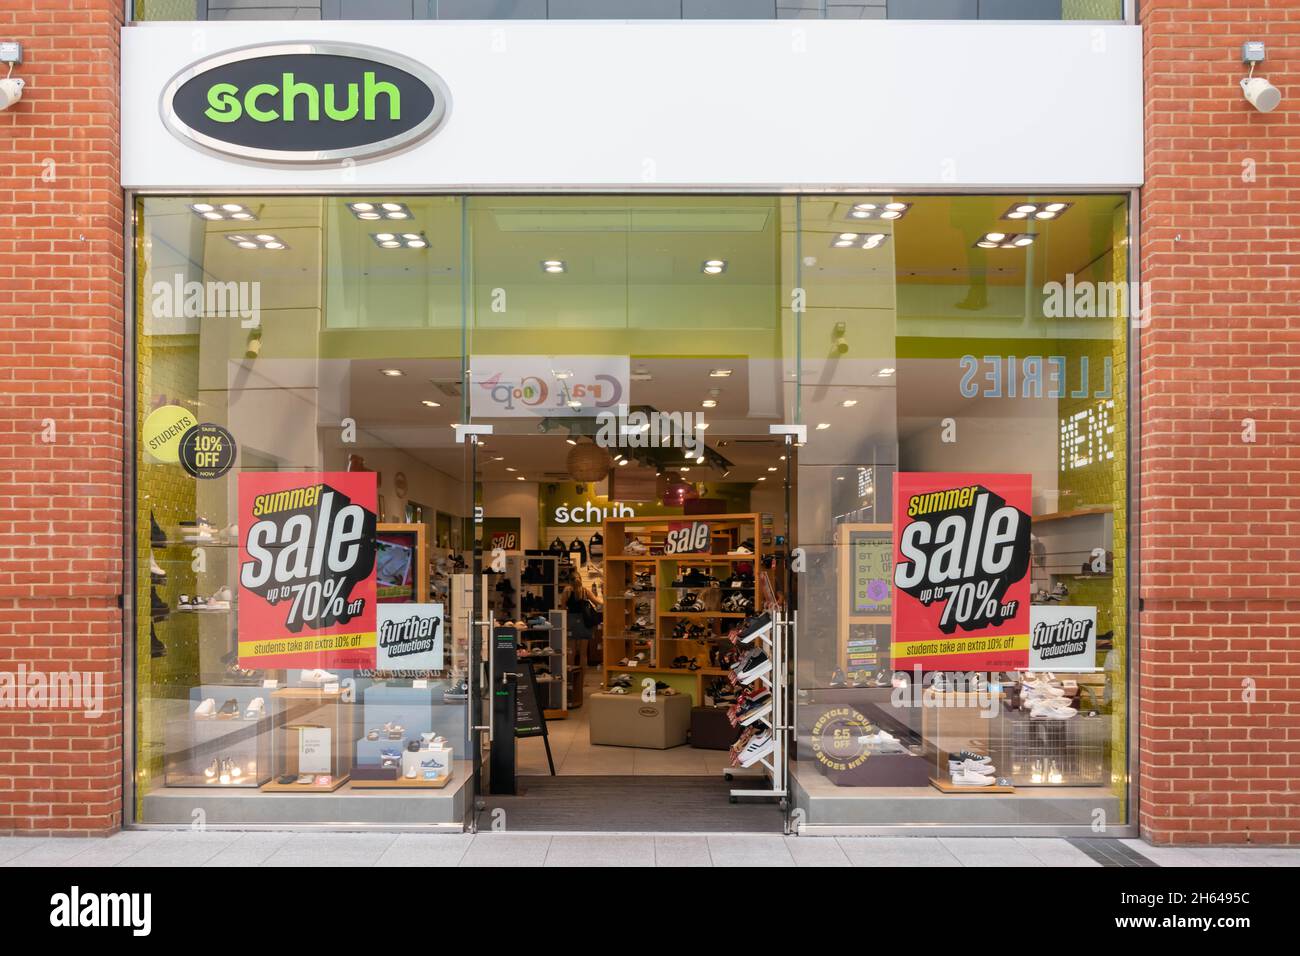 High Wycombe, Inglaterra - 21st 2021 de julio: Tienda Schuh en el centro comercial Eden. La cadena opera alrededor de 132 tiendas. Foto de stock